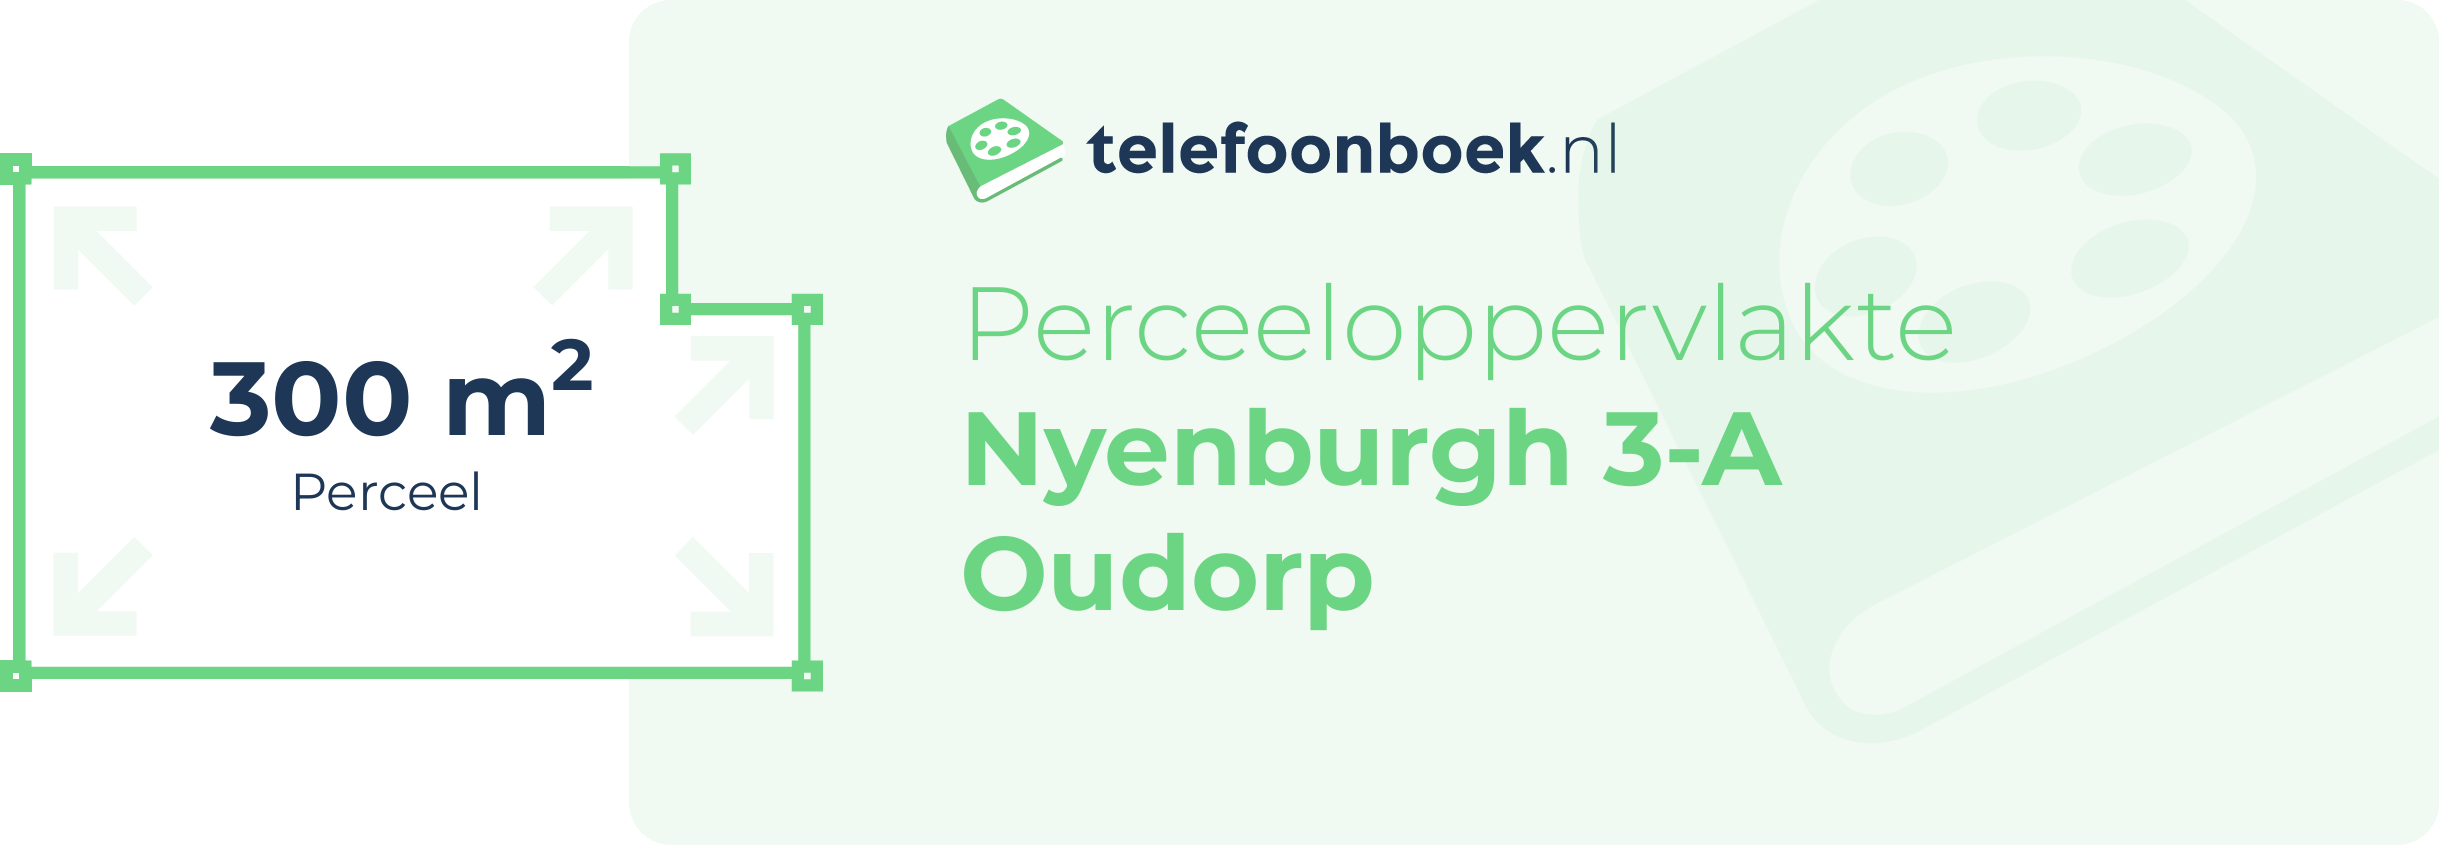 Perceeloppervlakte Nyenburgh 3-A Oudorp